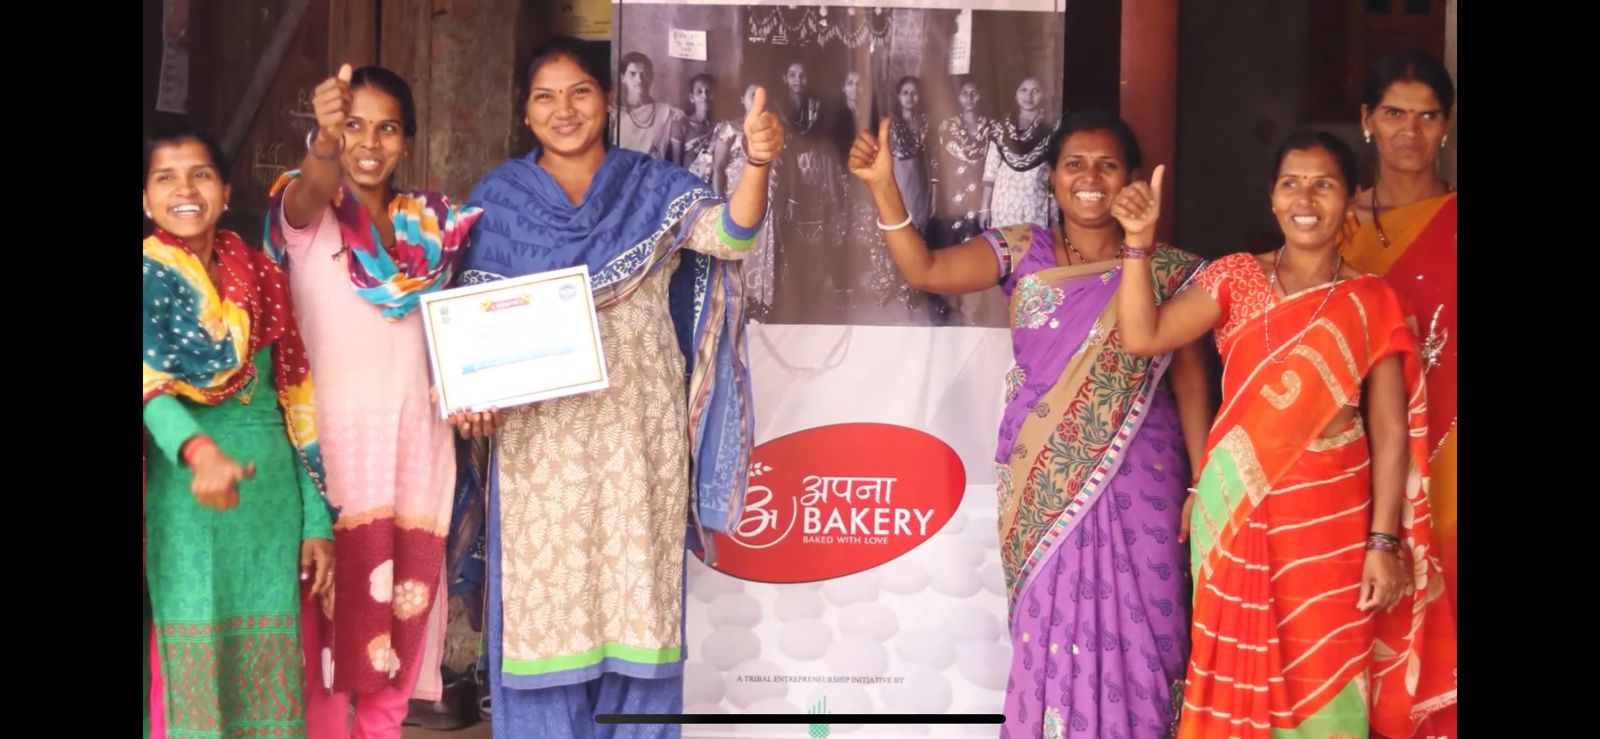 Apna Bakery – Aga Khan Rural Support Program